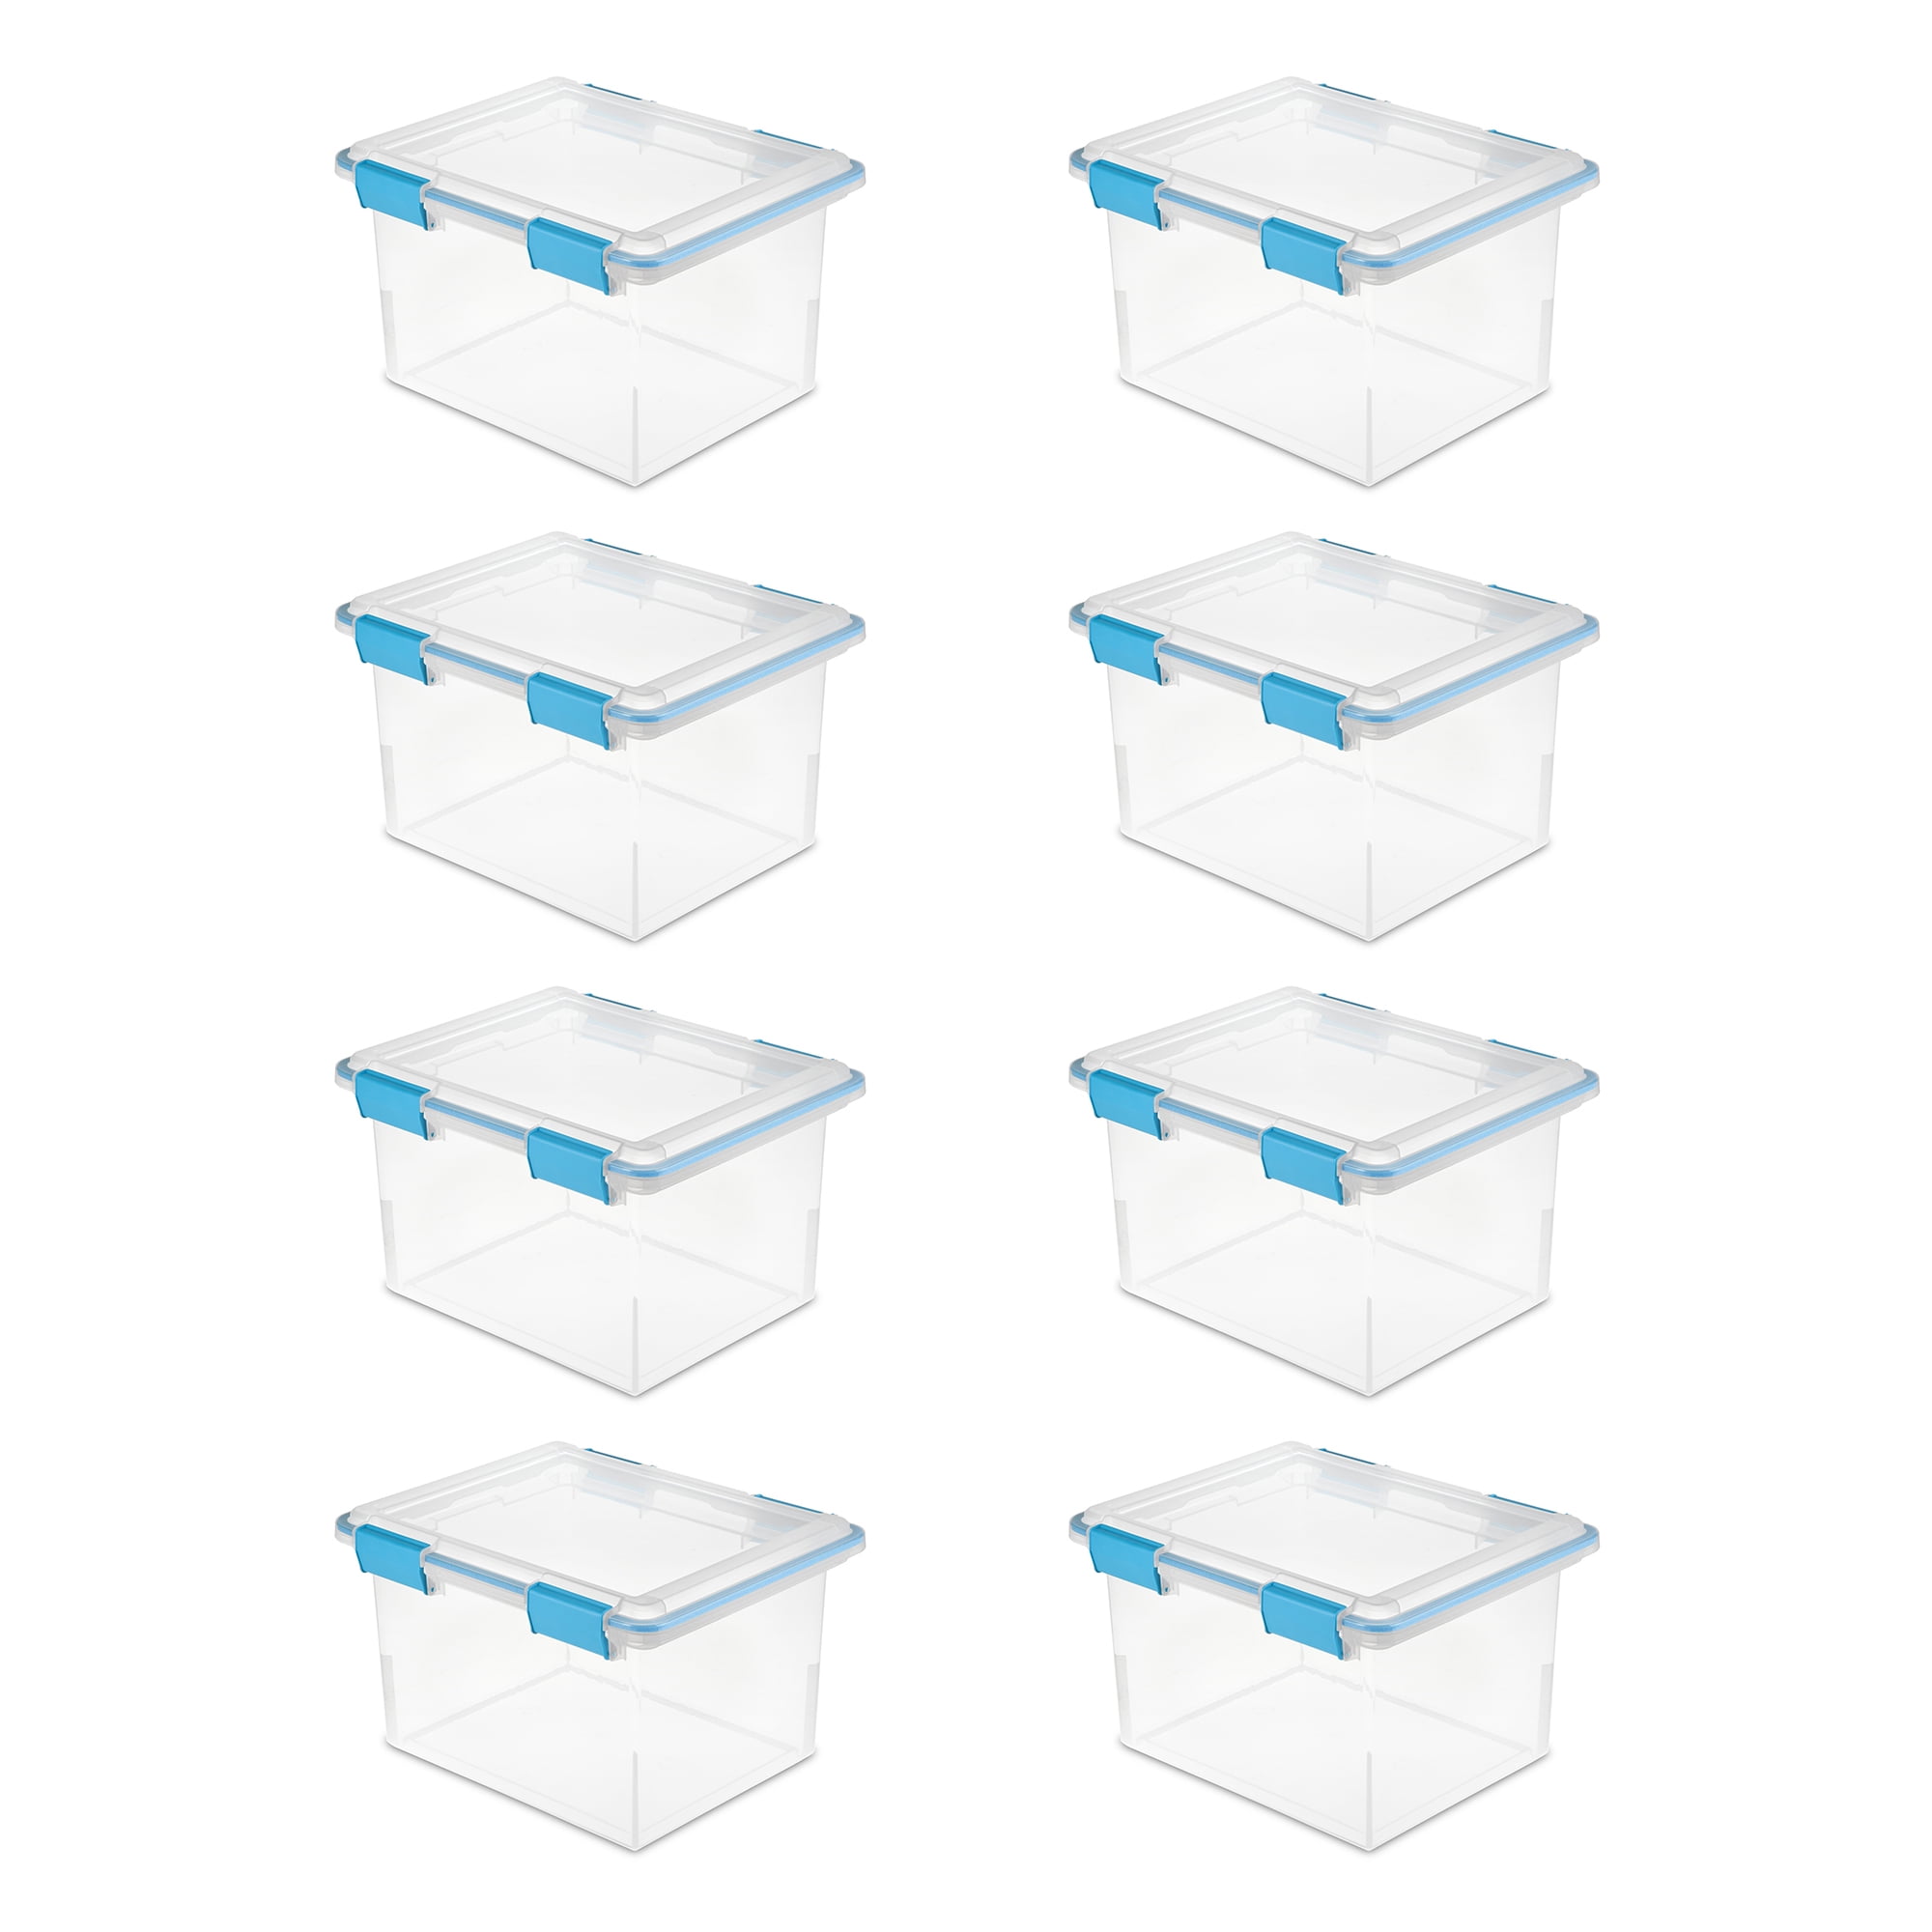 STERILITE Small Divided Storage Box 8.5”L x 5 3/8”W x 1.5”h Lot Of 12 New 